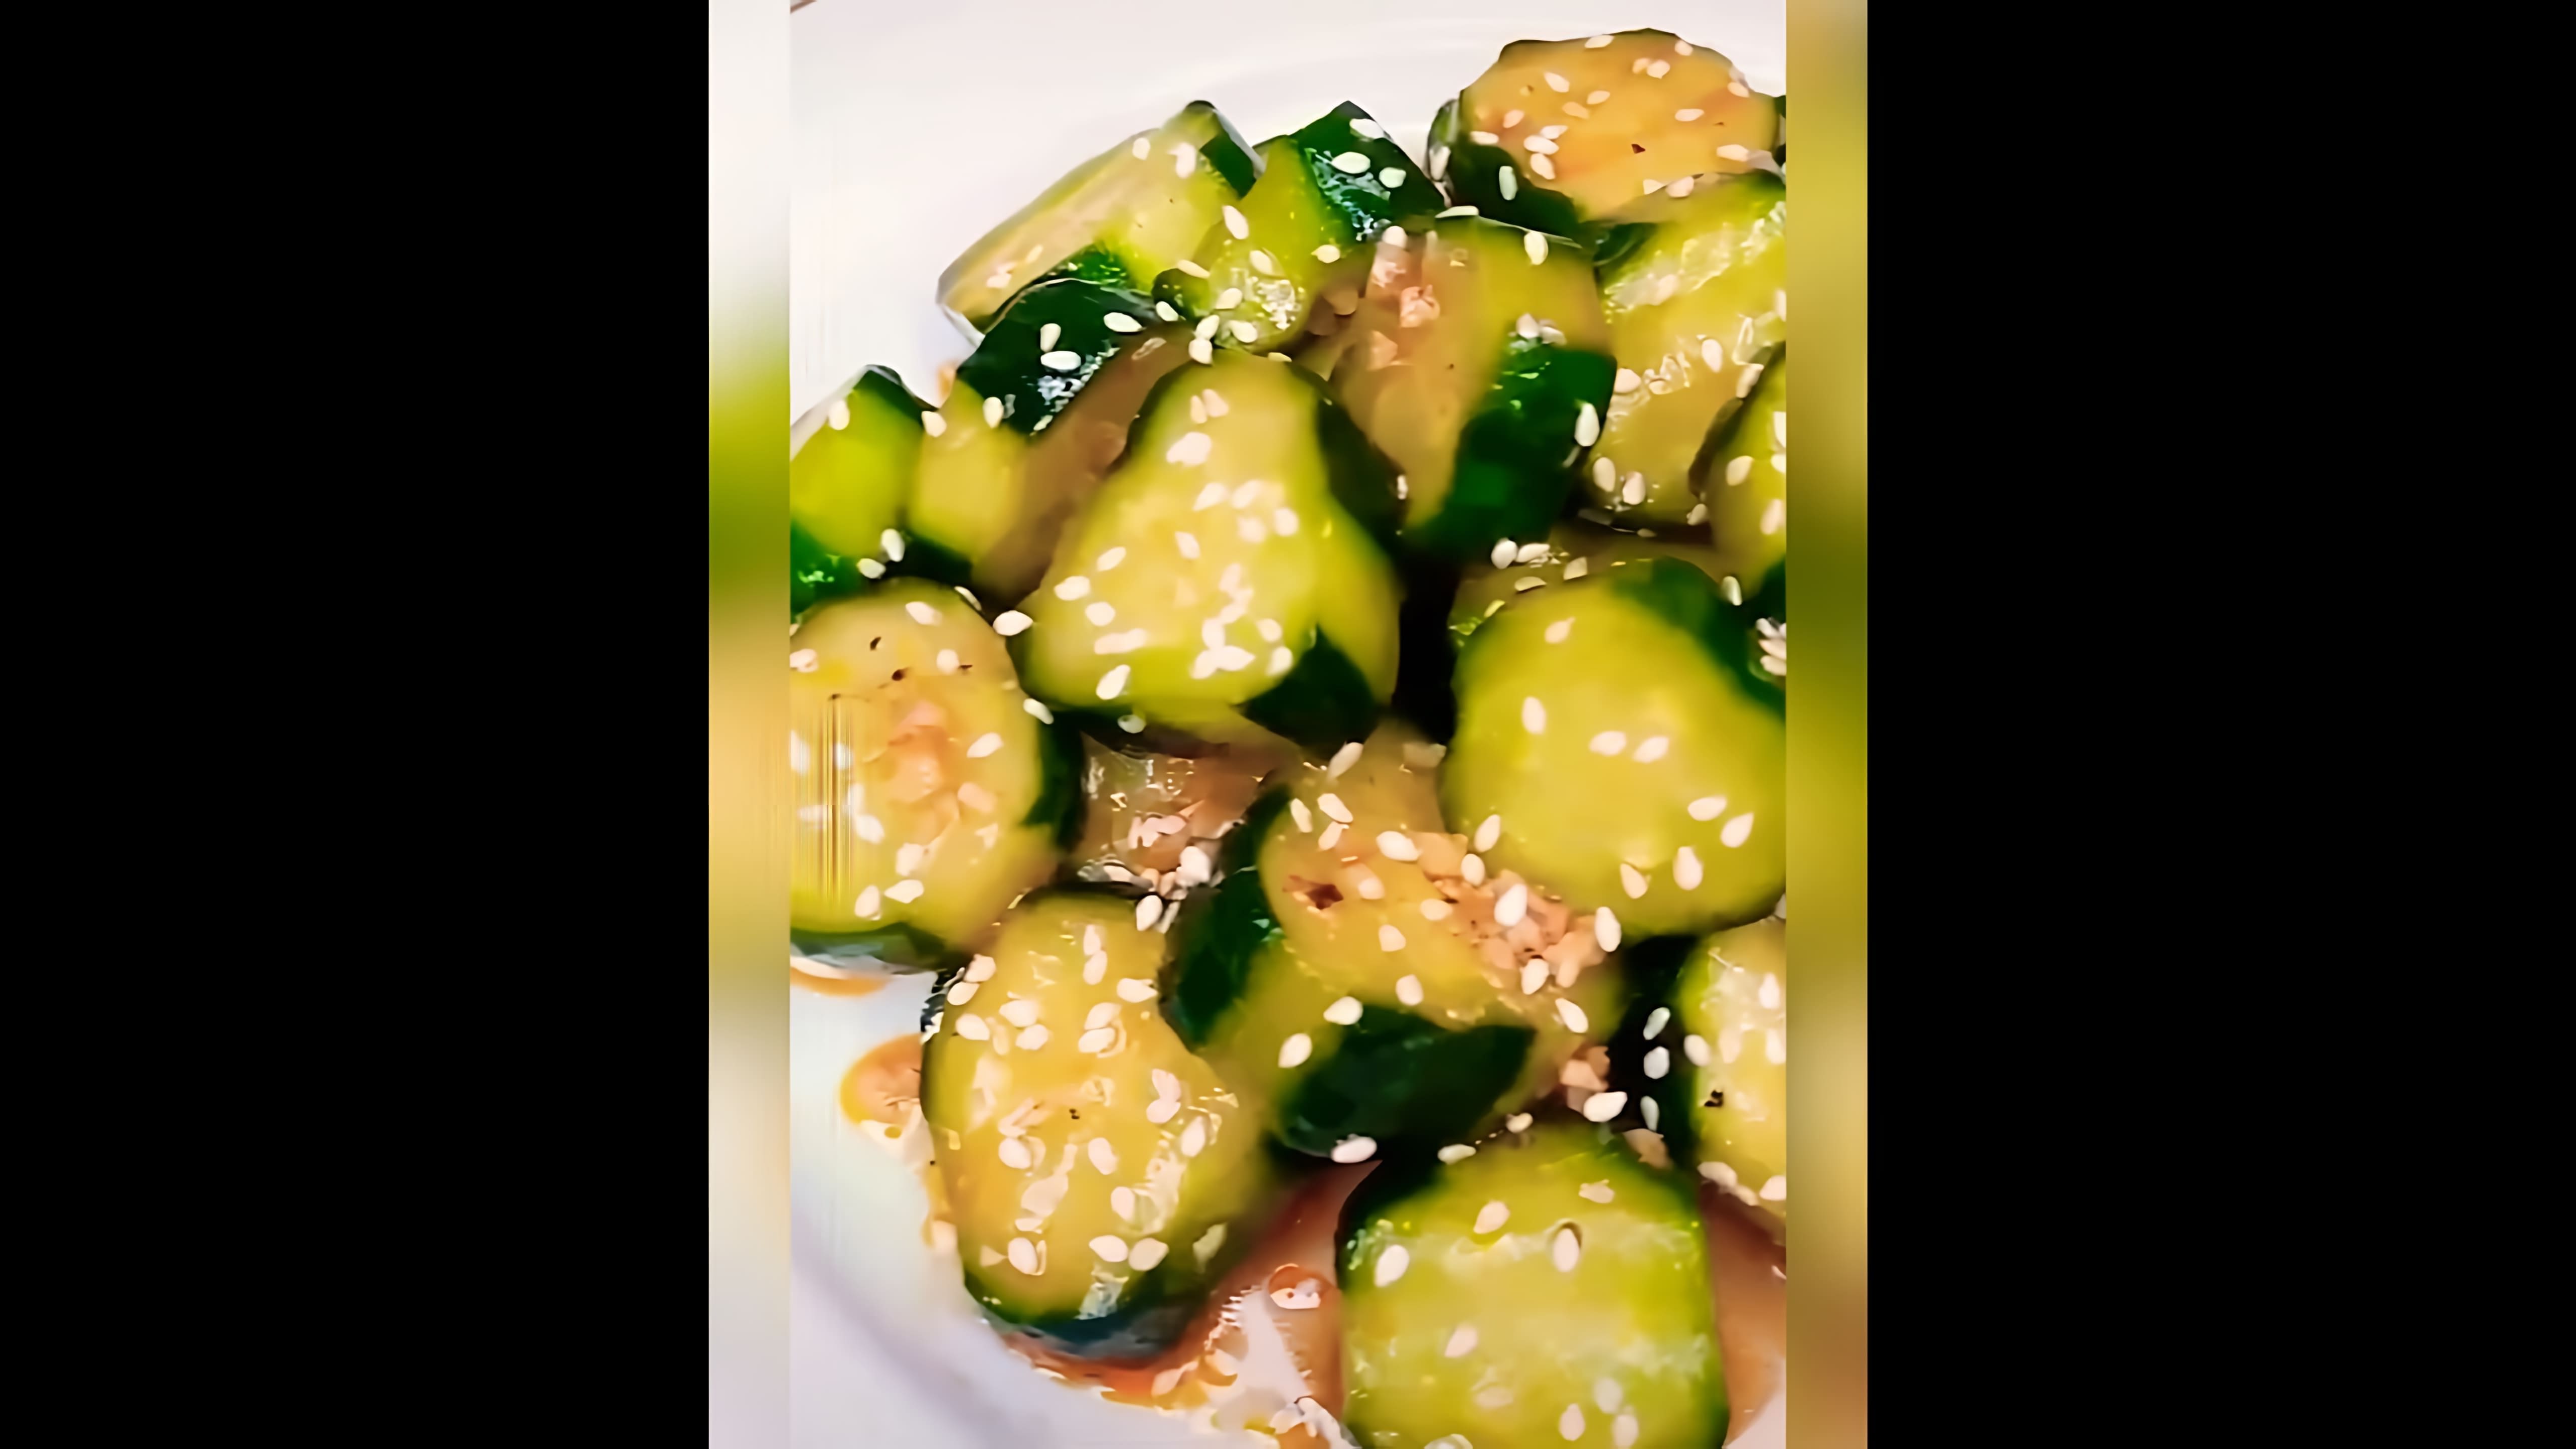 В этом видео демонстрируется процесс приготовления салата из огурцов в соевом соусе